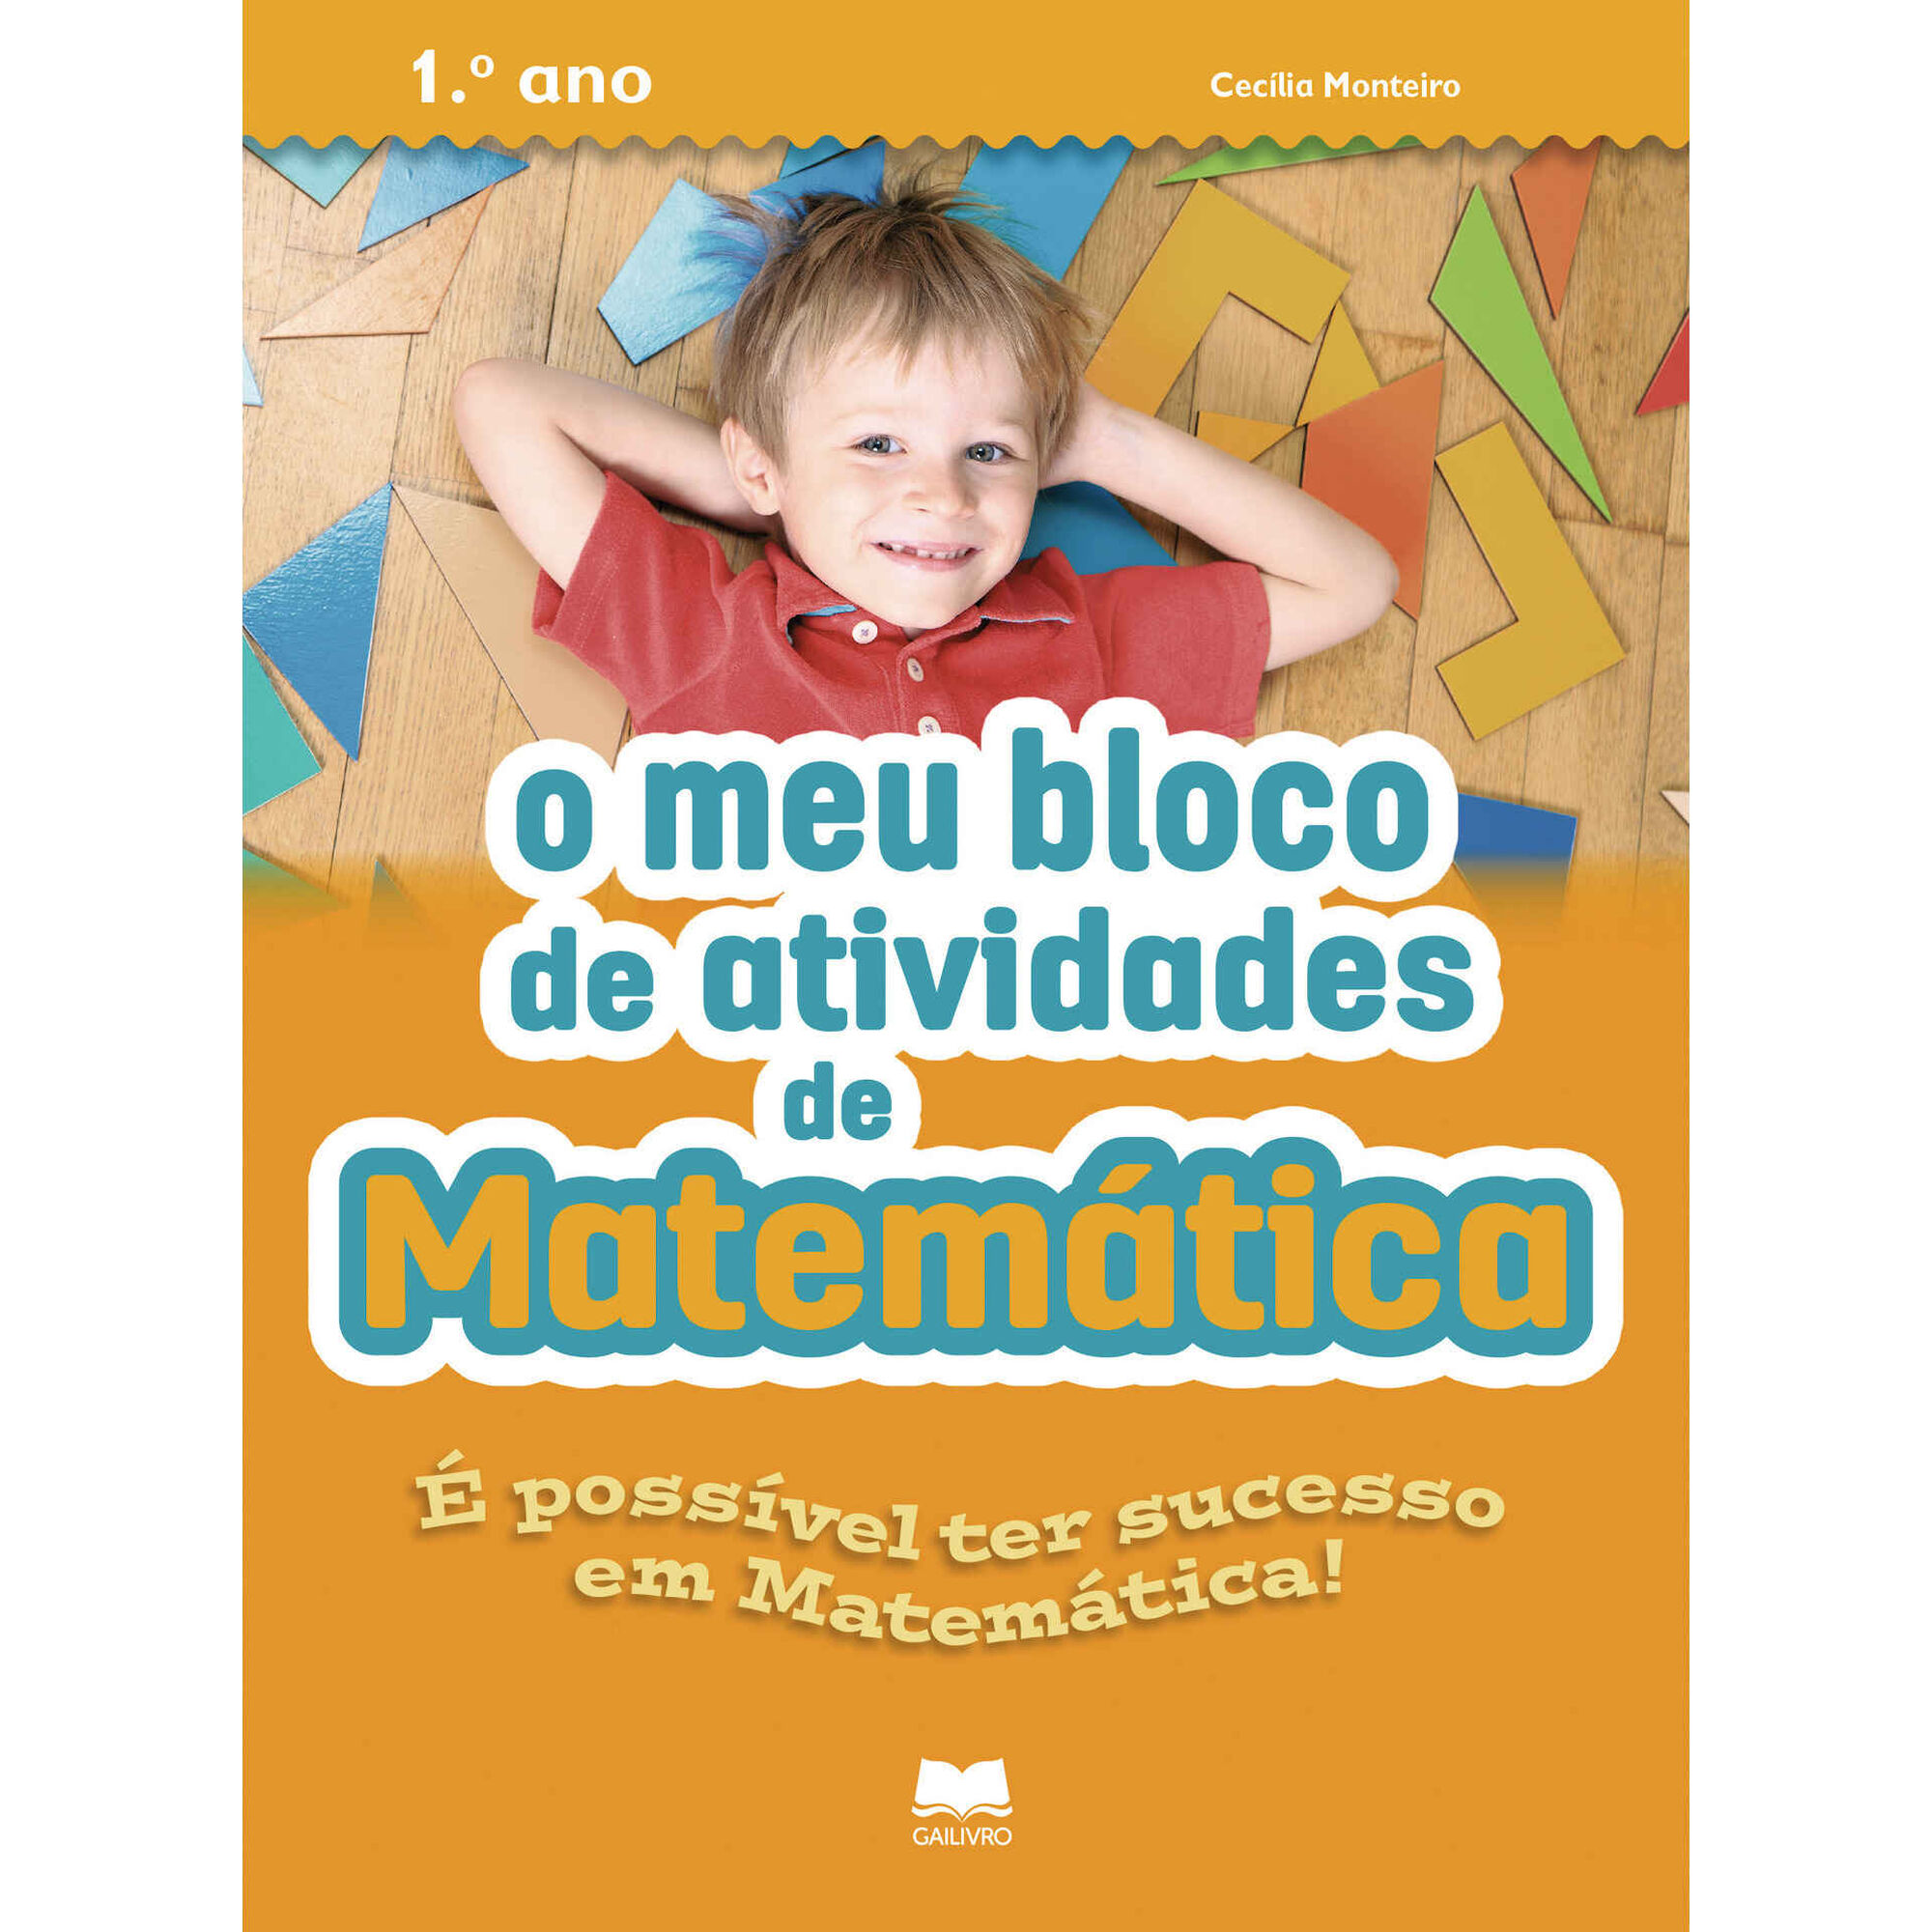 Atividades de matemática on-line adaptáveis para crianças da pré